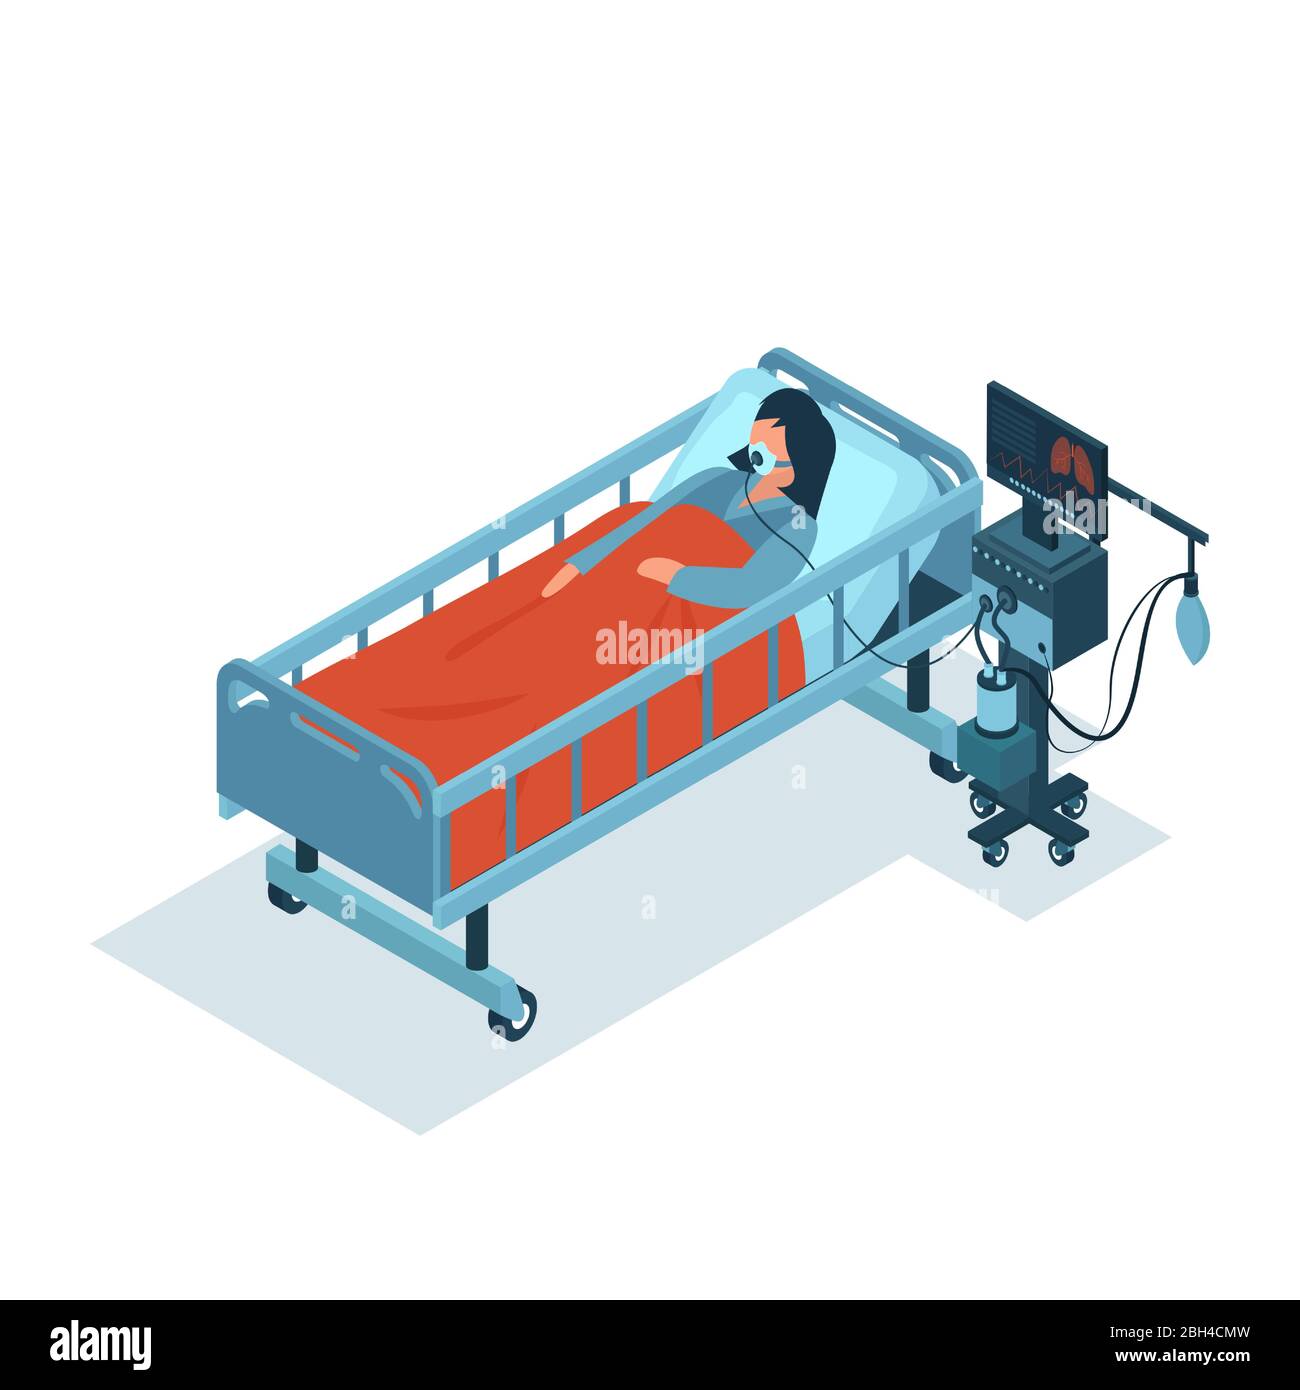 Vecteur isométrique d'une patiente gravement malade sur un ventilateur recevant une oxygénothérapie Illustration de Vecteur